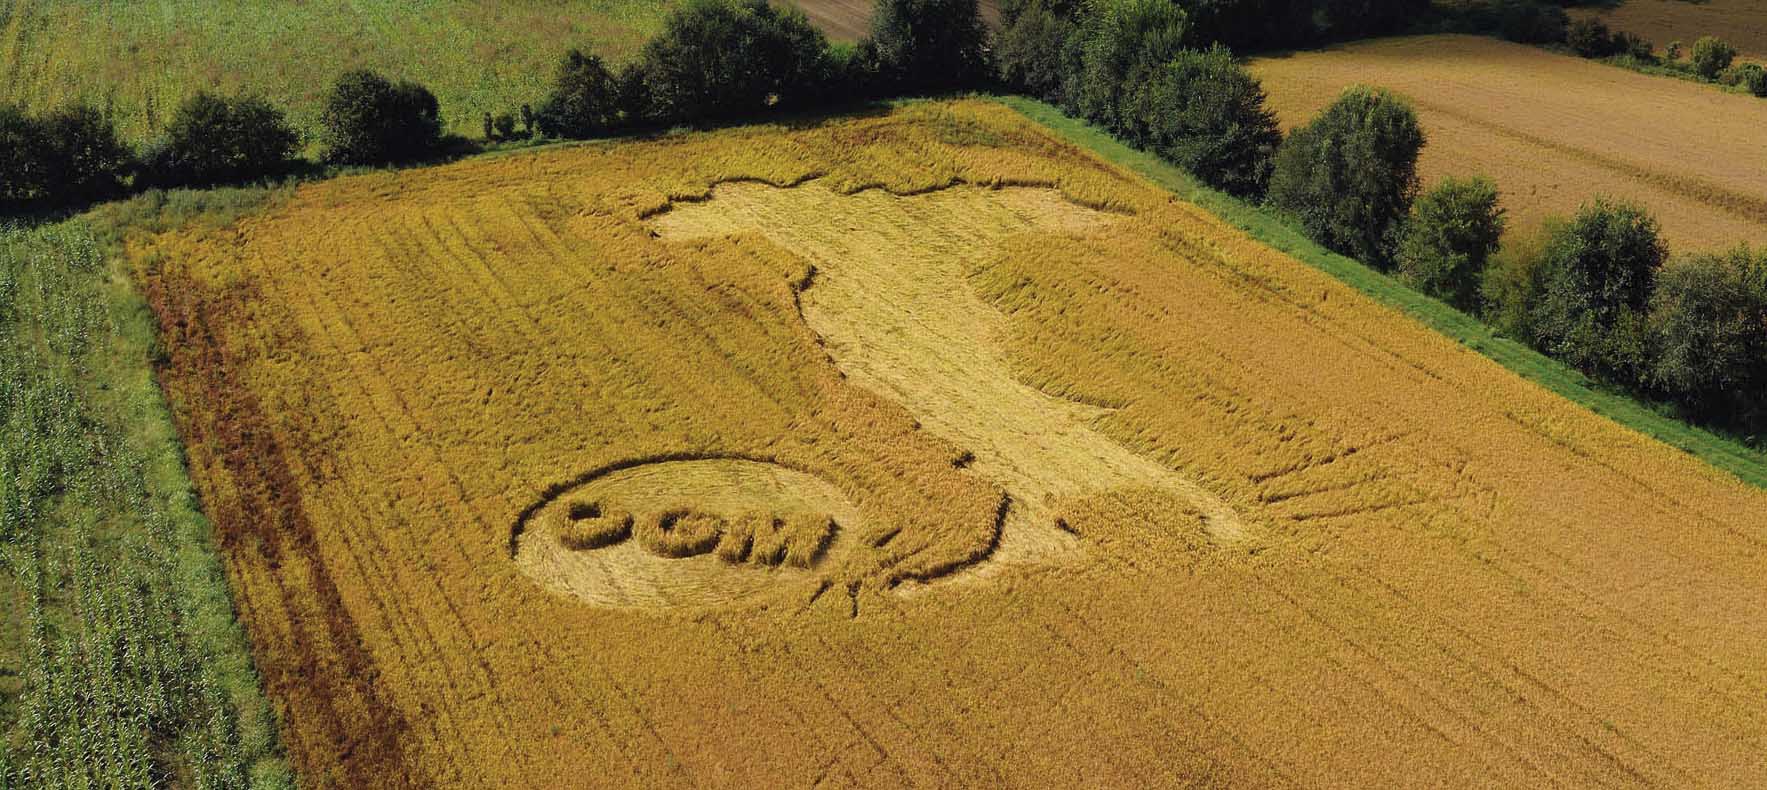 greenpeace campo di grano falciato logo no ogm italia